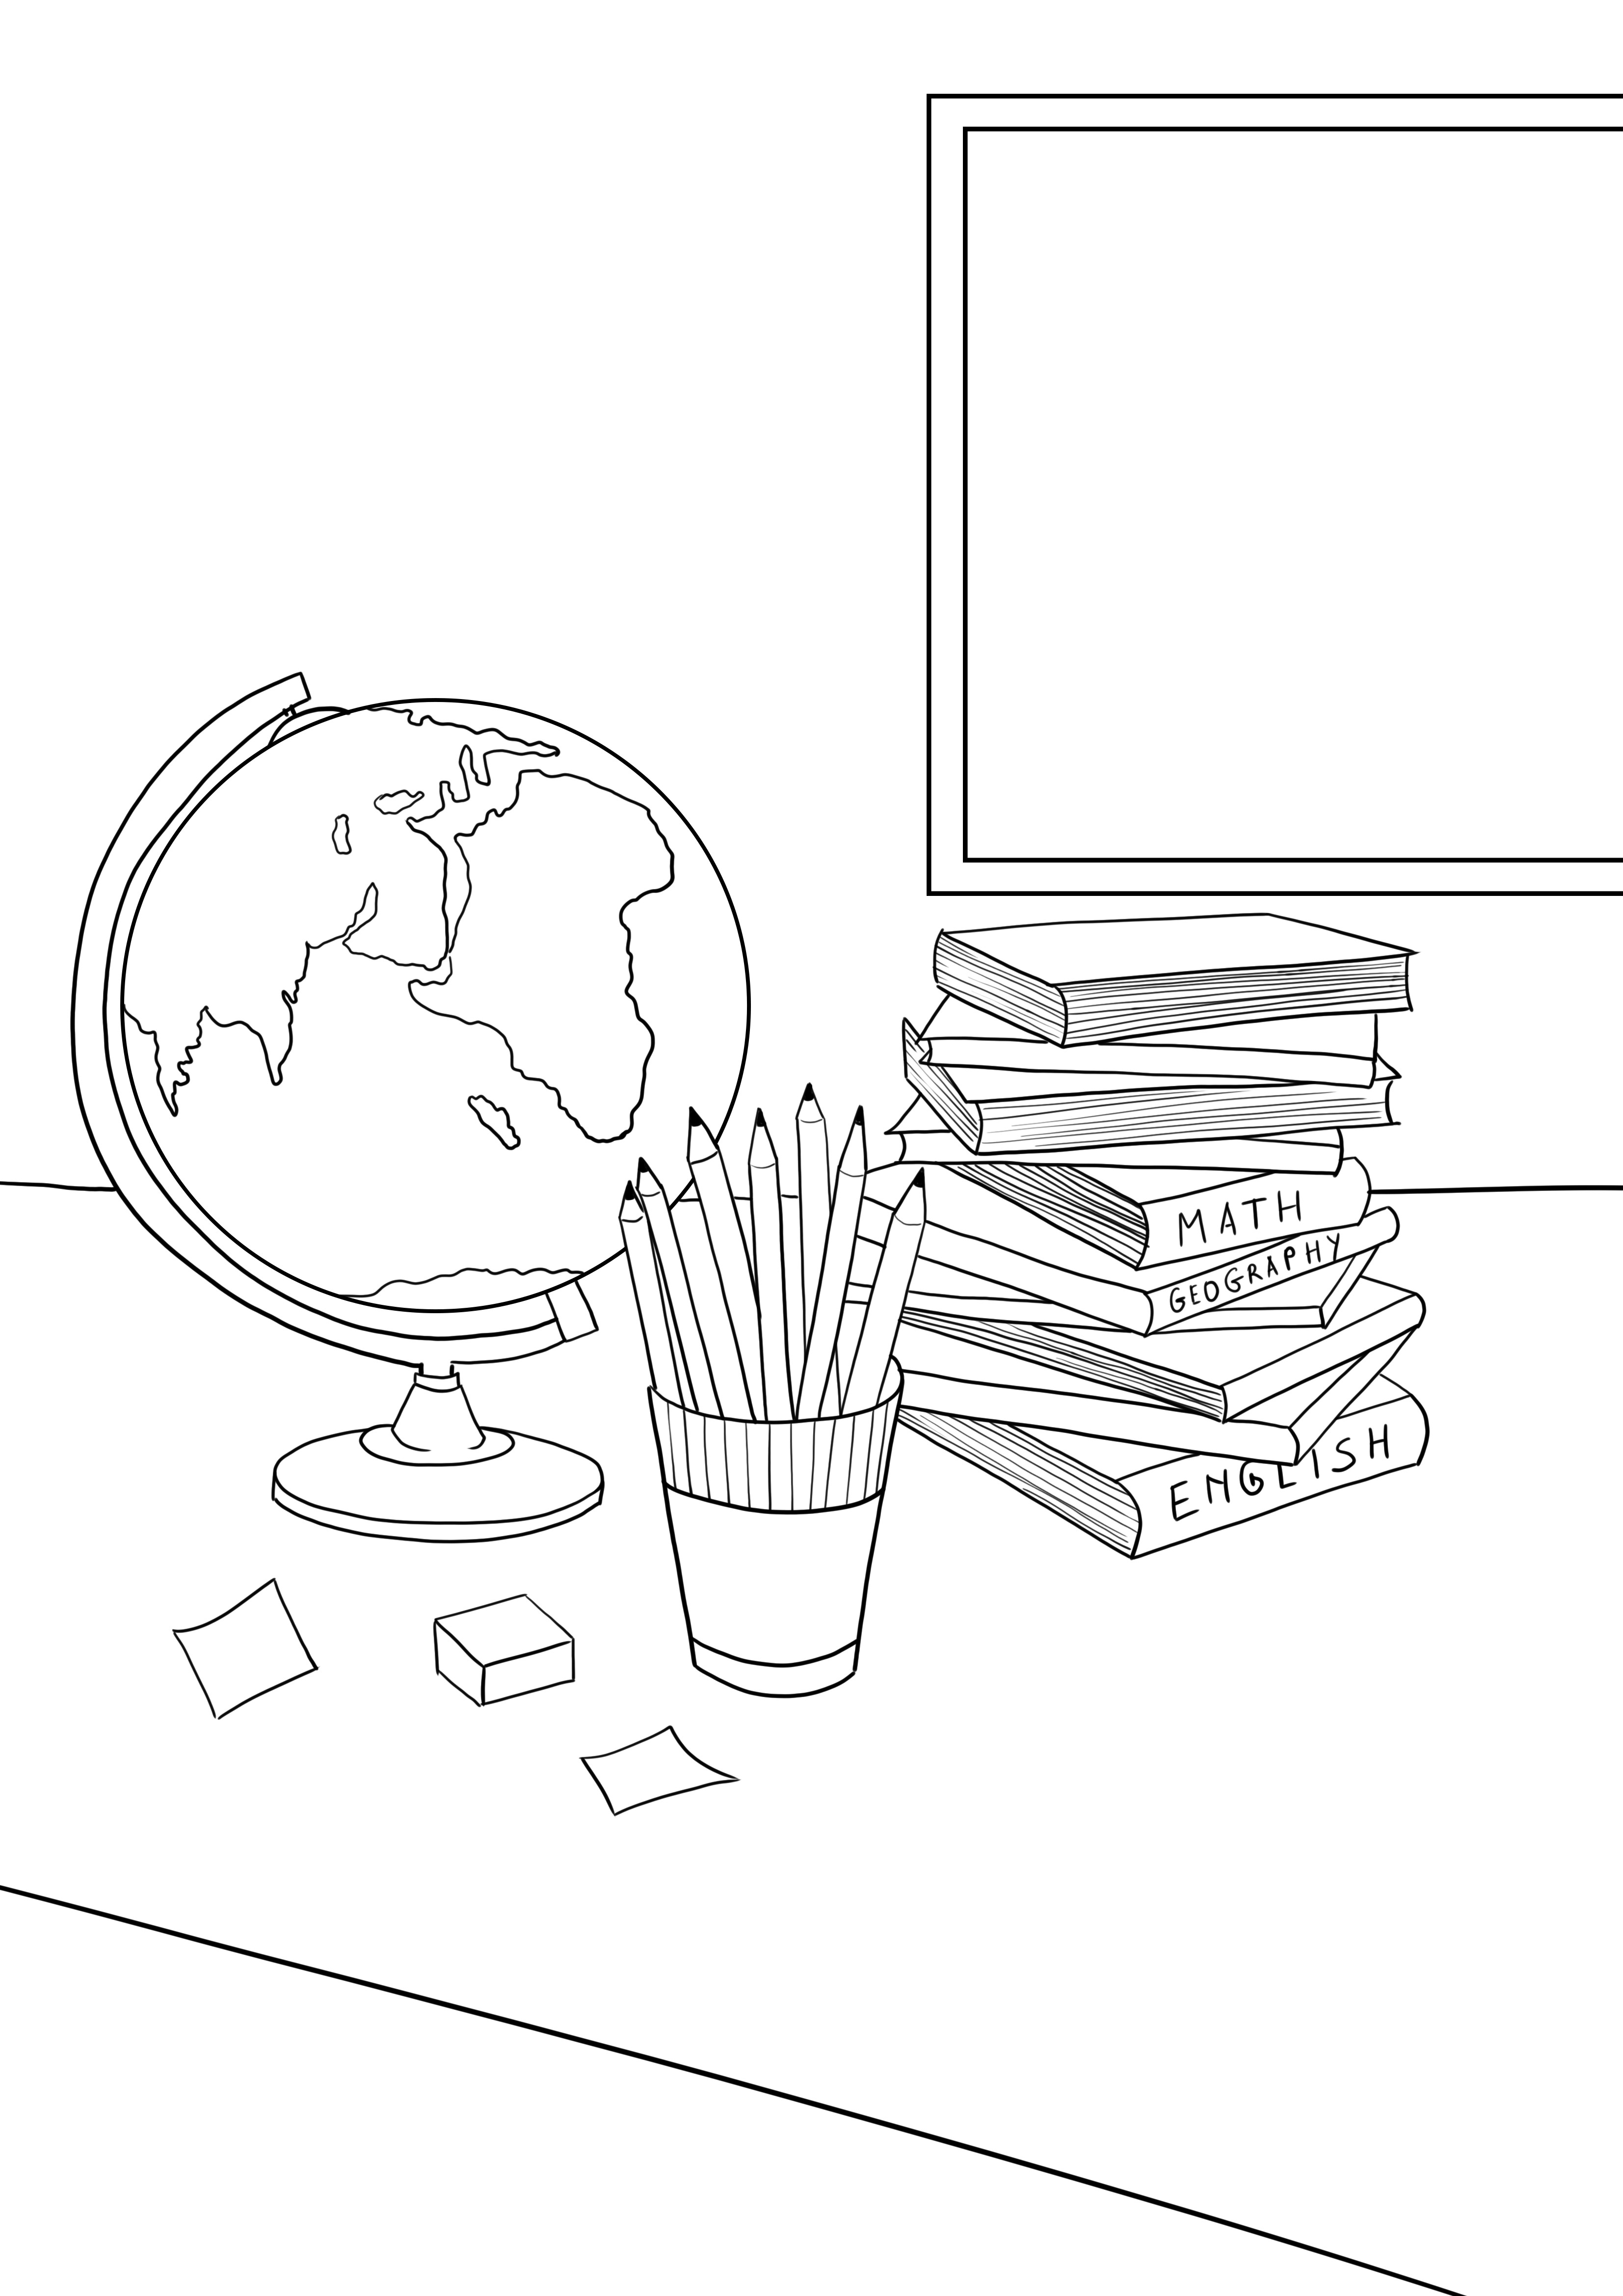 Buku sekolah-pensil-globe gratis yang dapat dicetak untuk anak-anak dari segala usia